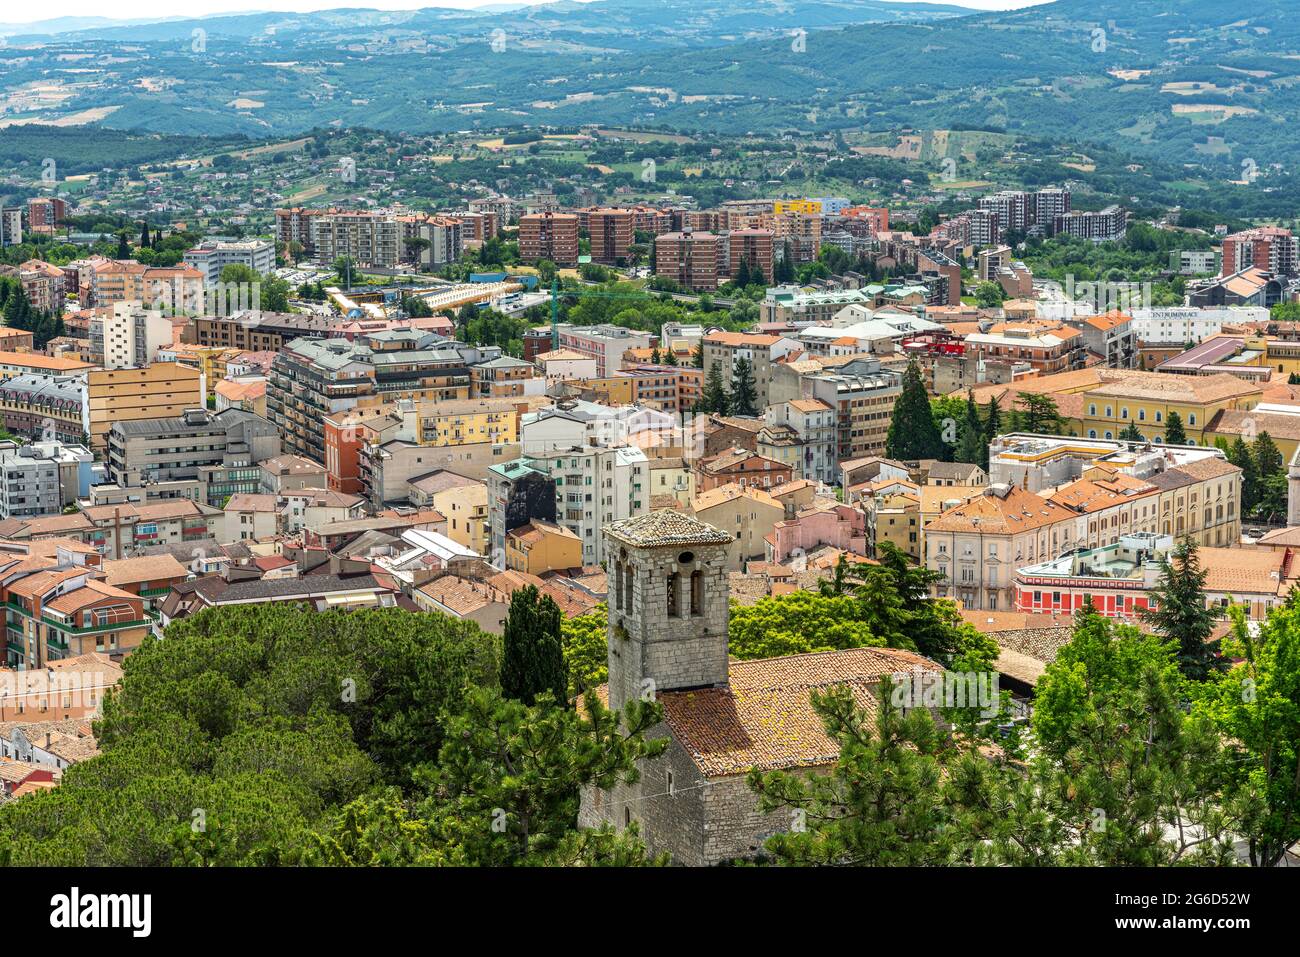 Vista superior de la ciudad de Campobasso, la capital provincial de Molise. Campobasso, Molise, Italia, Europa Foto de stock